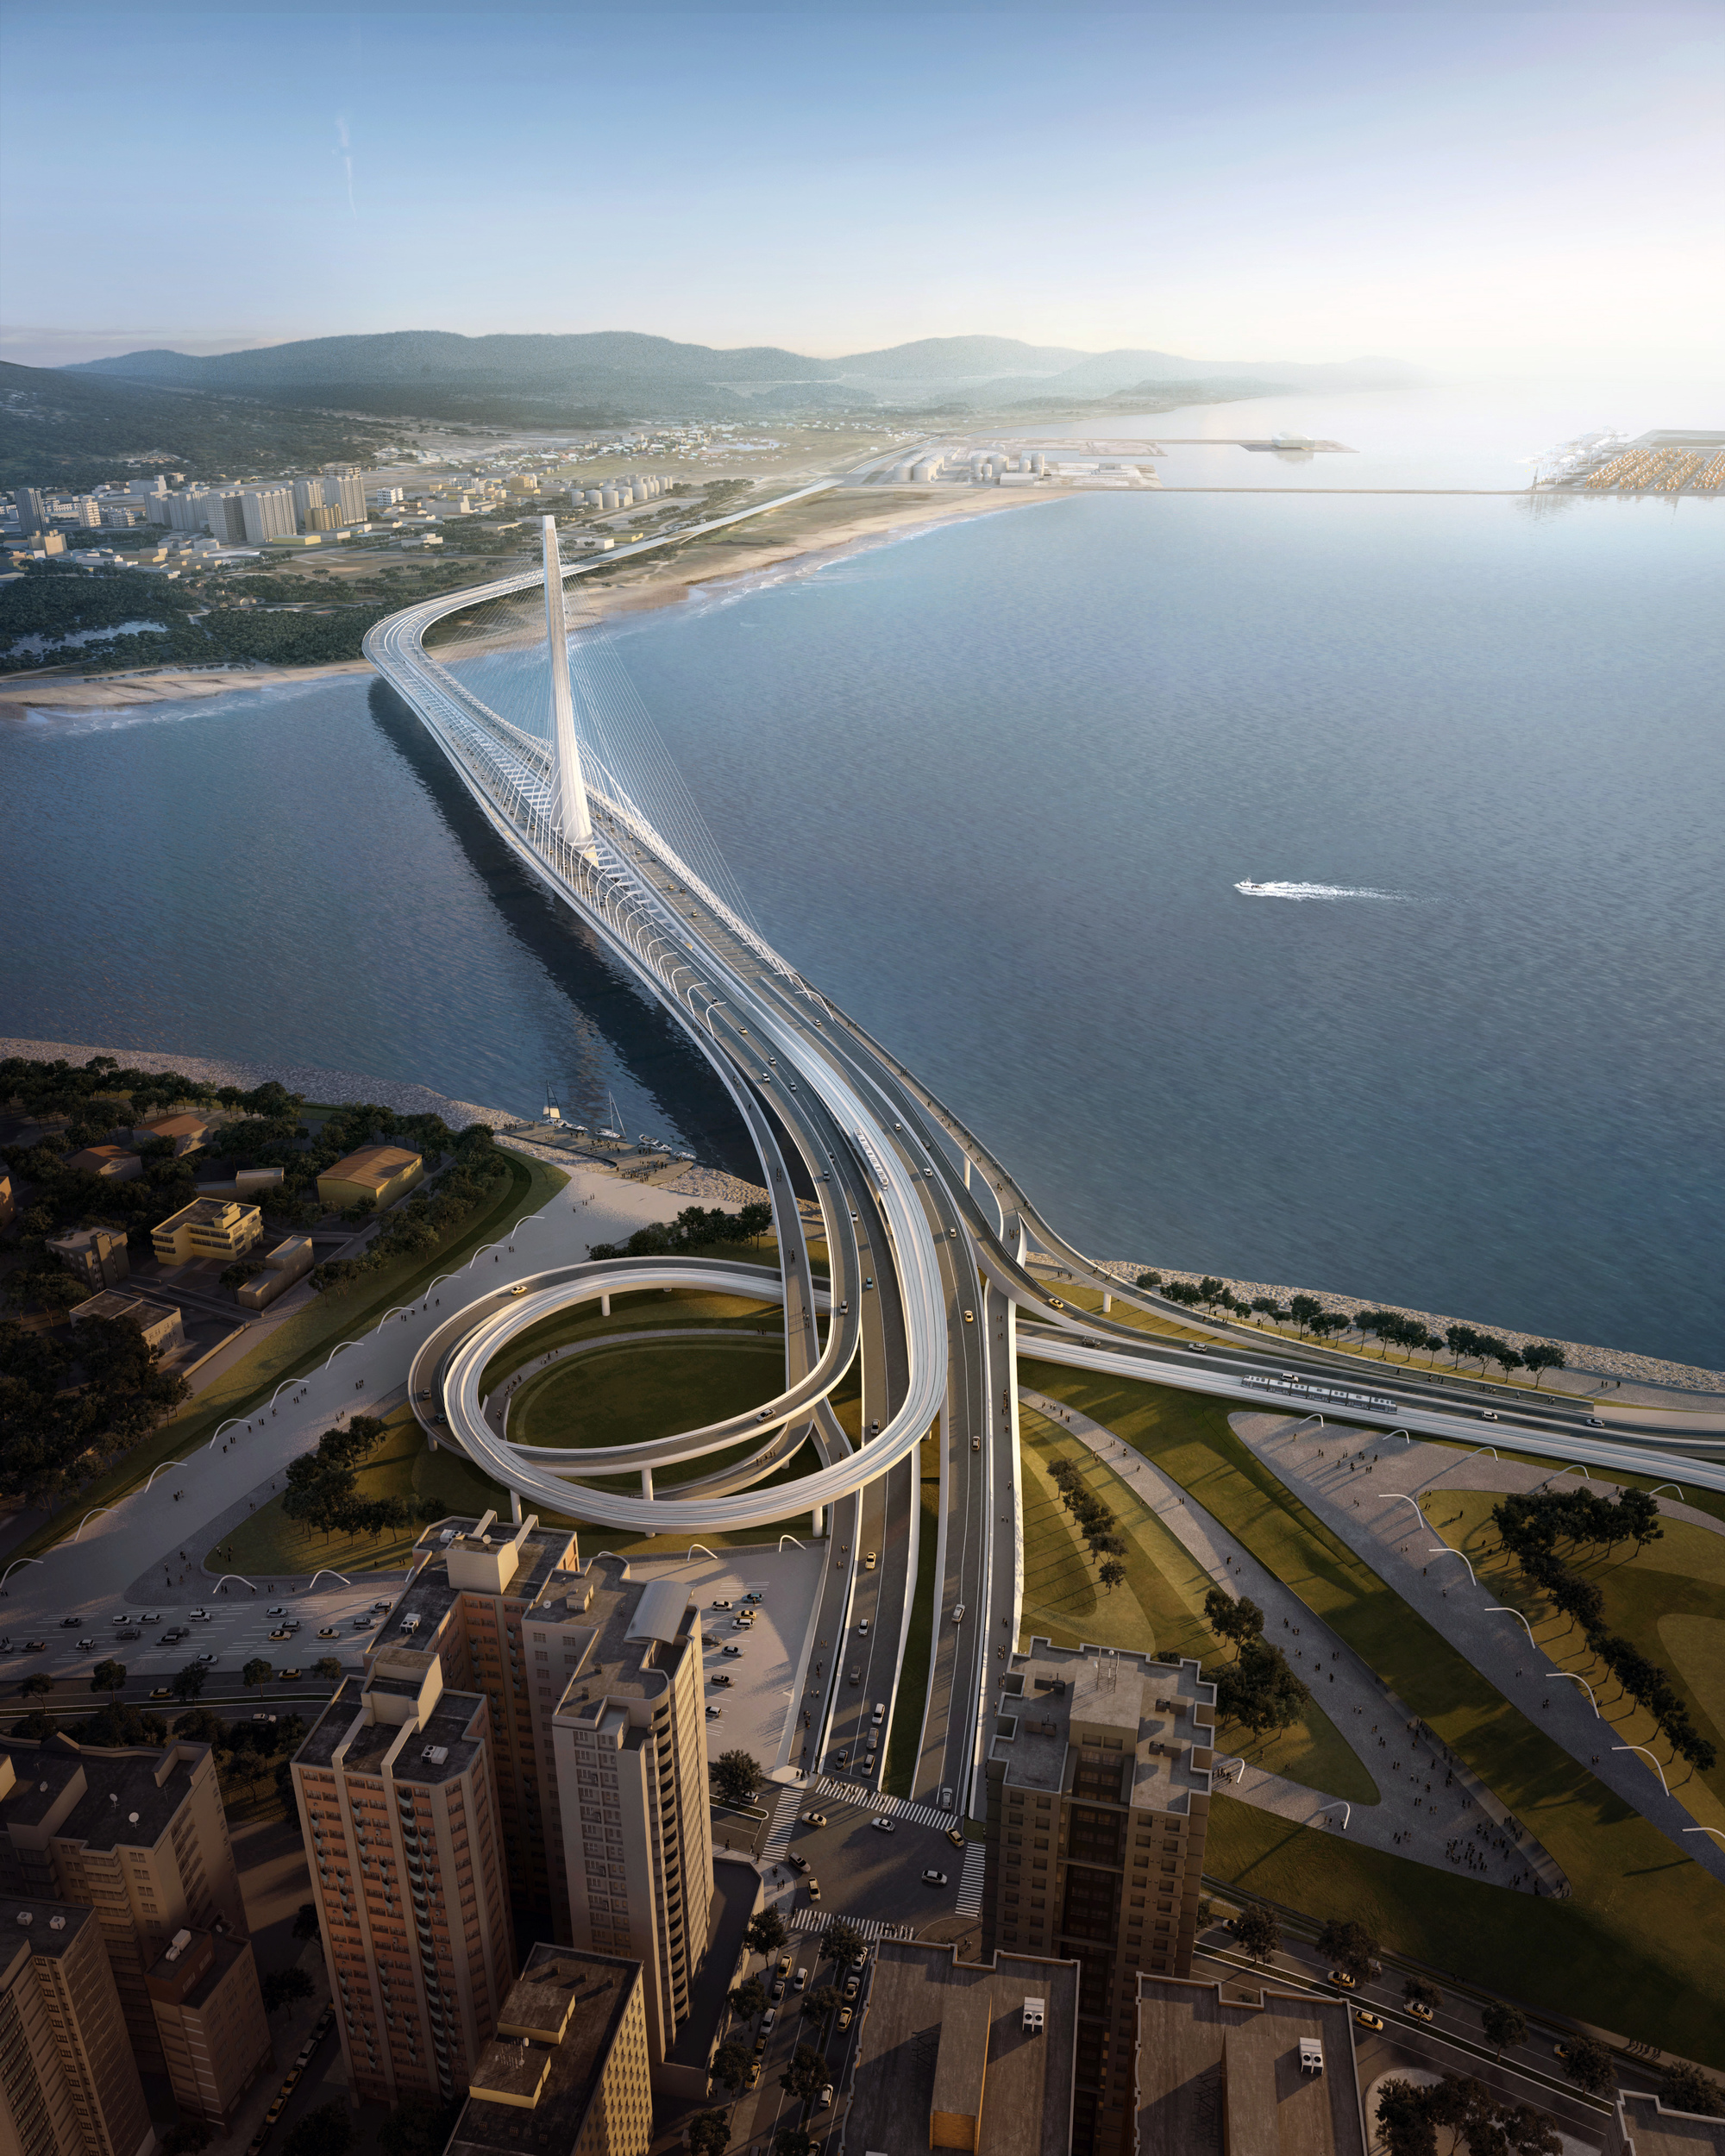 扎哈·哈迪德建筑事务所设计的台北淡江大桥破土动工